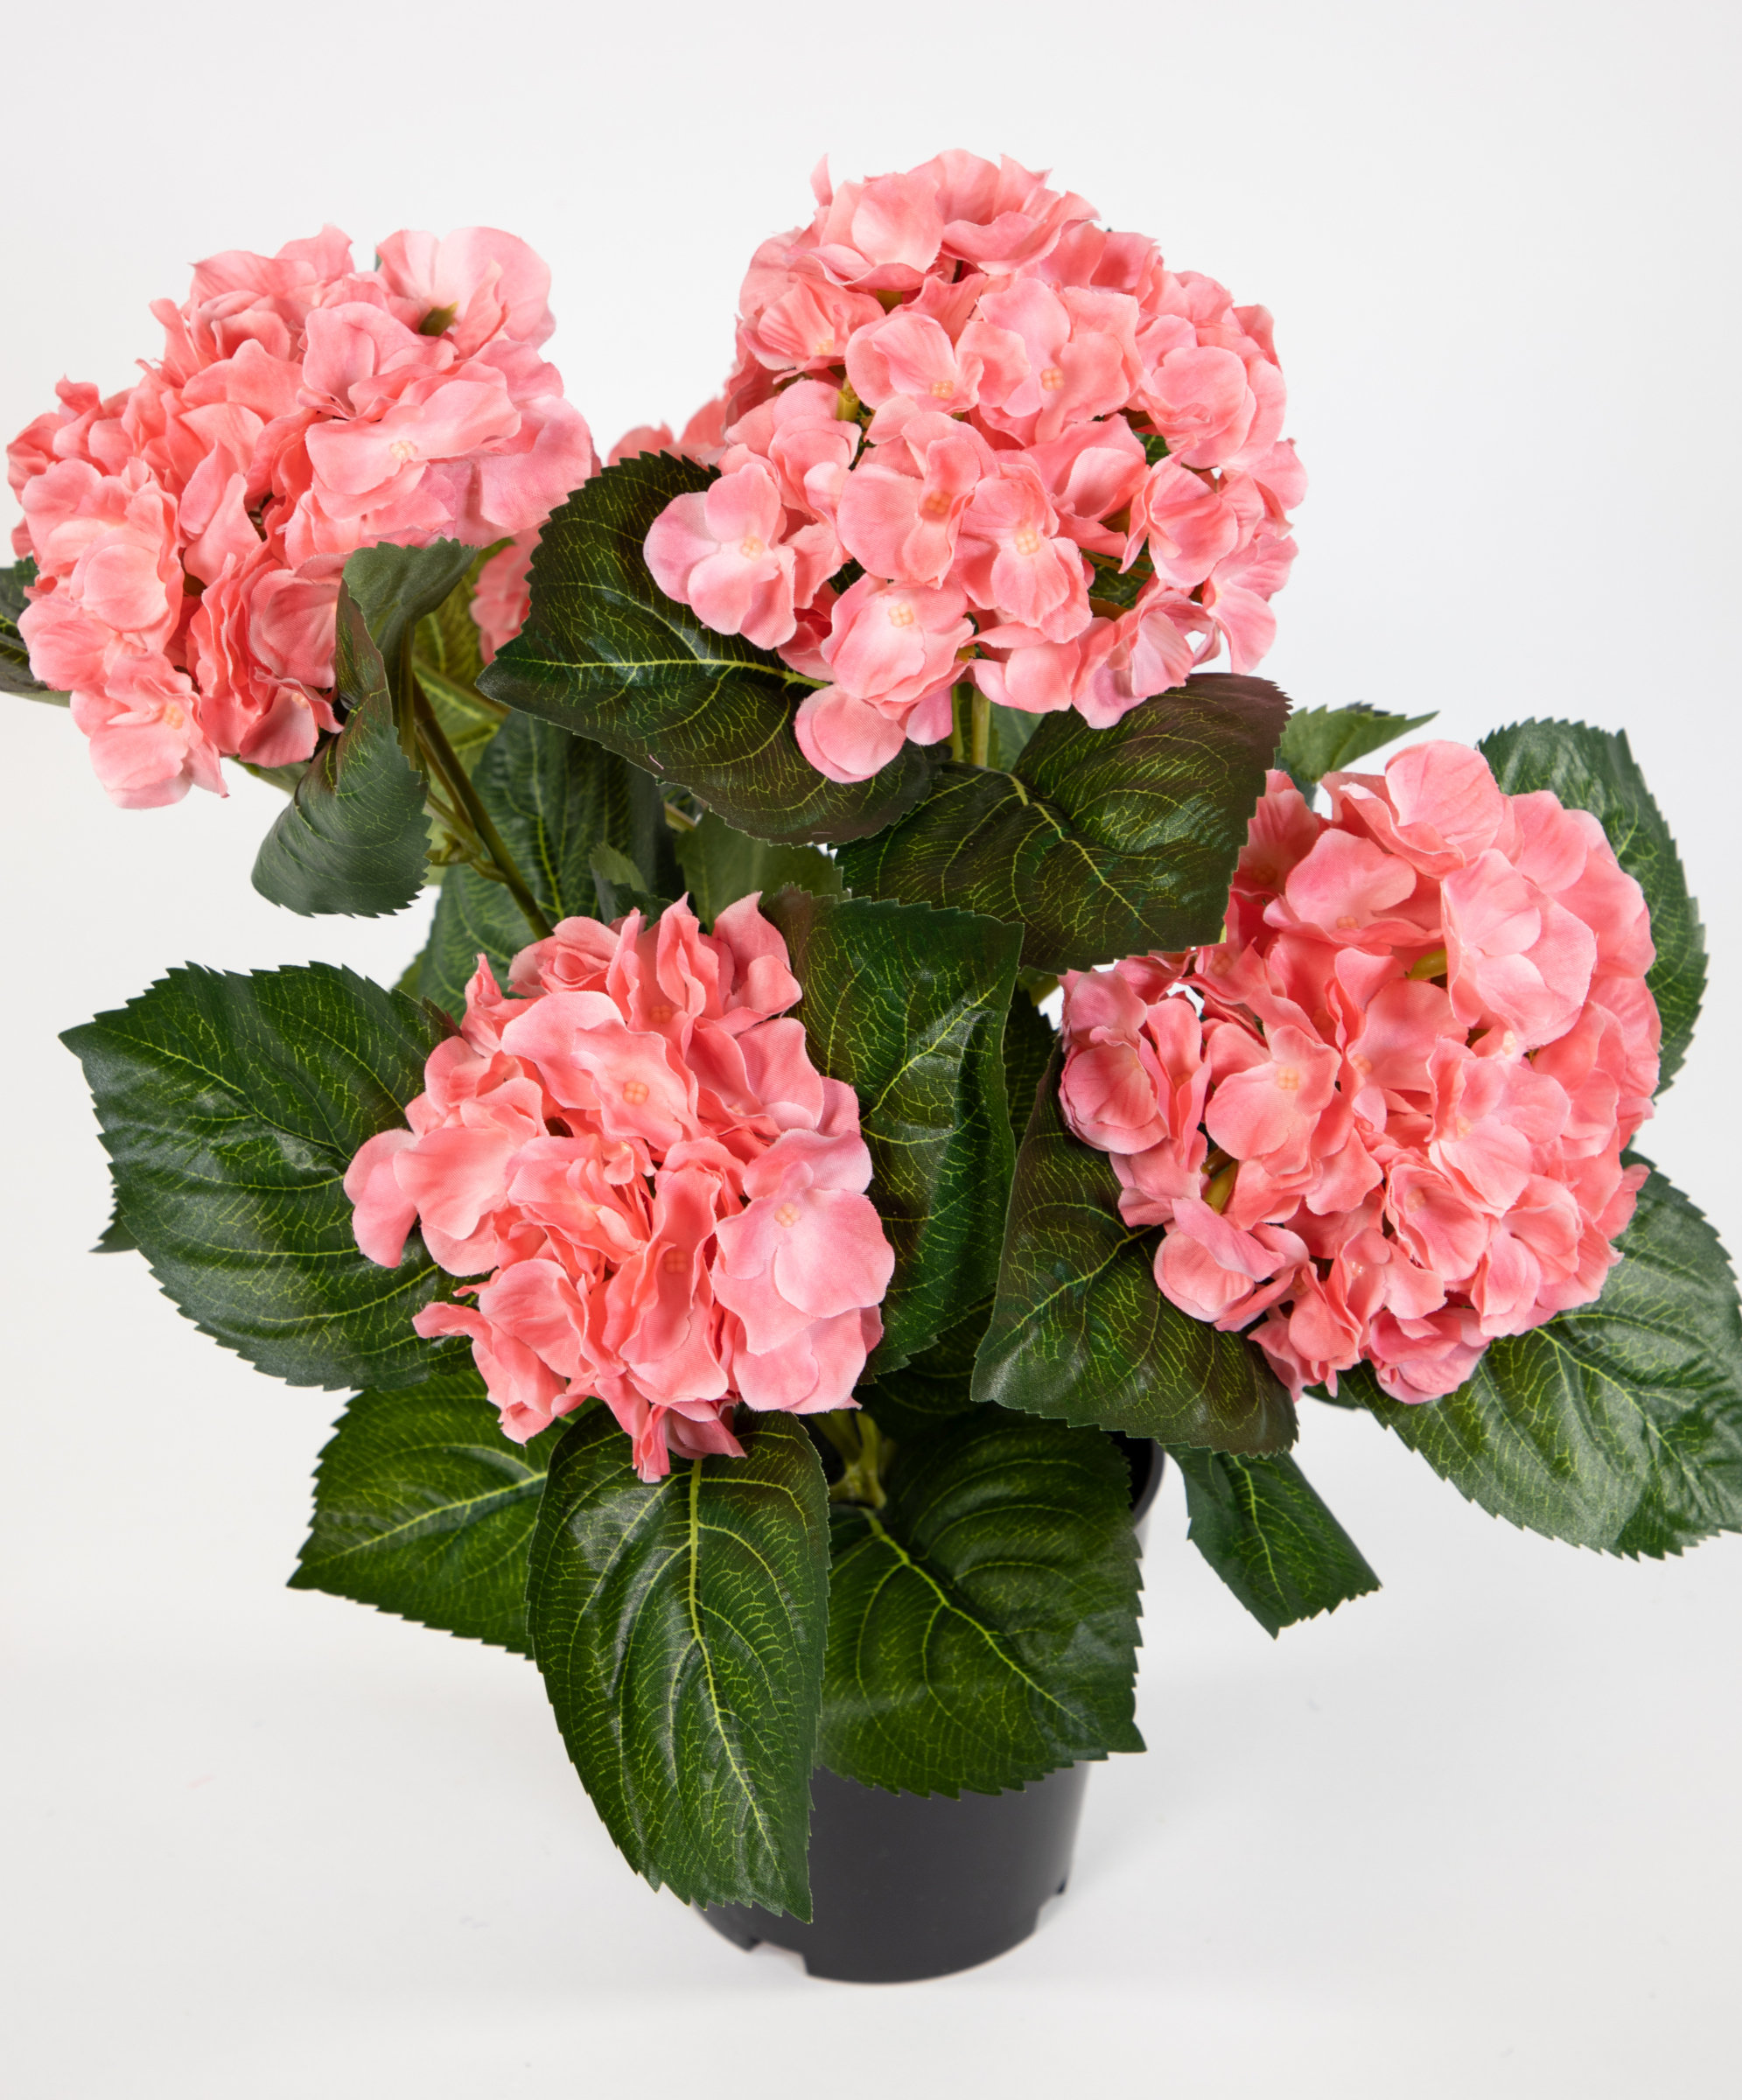 Hortensienbusch Deluxe 42cm rosa-pink künstliche Topf im Blumen Kunstpflanzen Pflanzen Hortensie LM